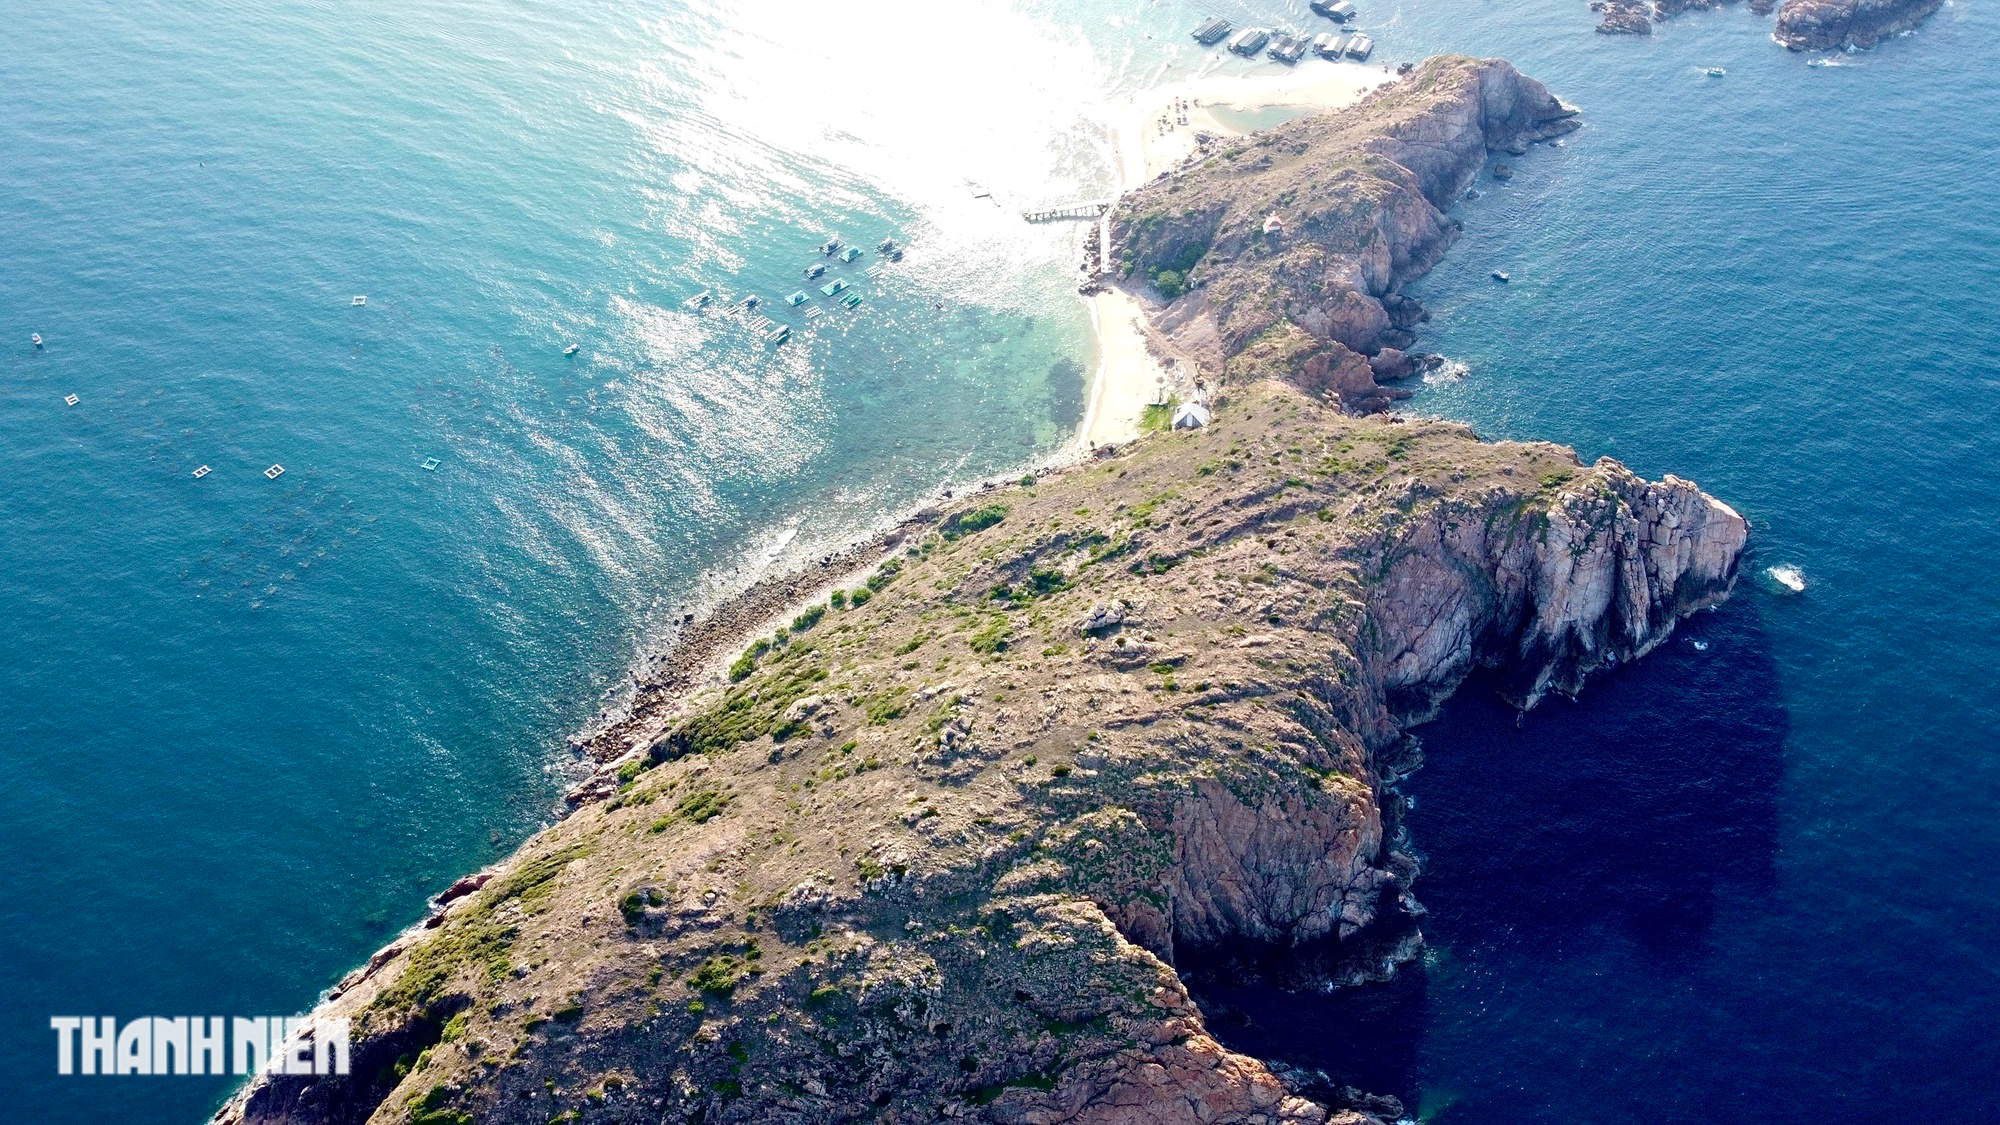 Hình dáng kỳ lạ của hòn đảo ở giữa biển Quy Nhơn - Ảnh 2.